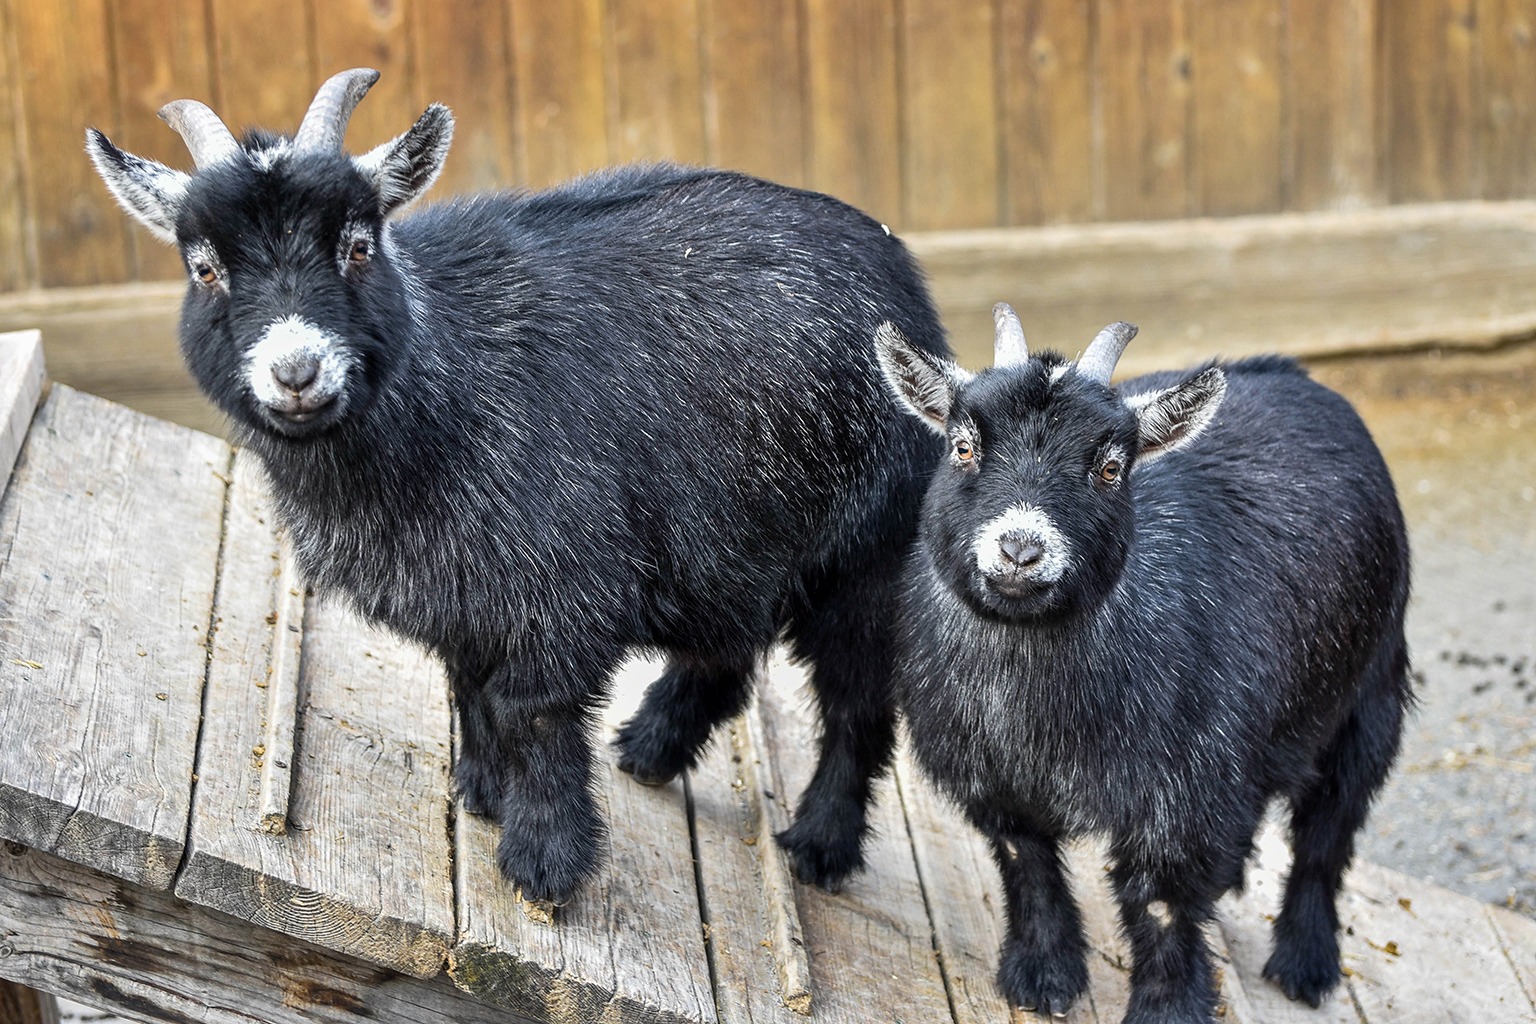 Goat - Description, Habitat, Image, Diet, and Interesting Facts